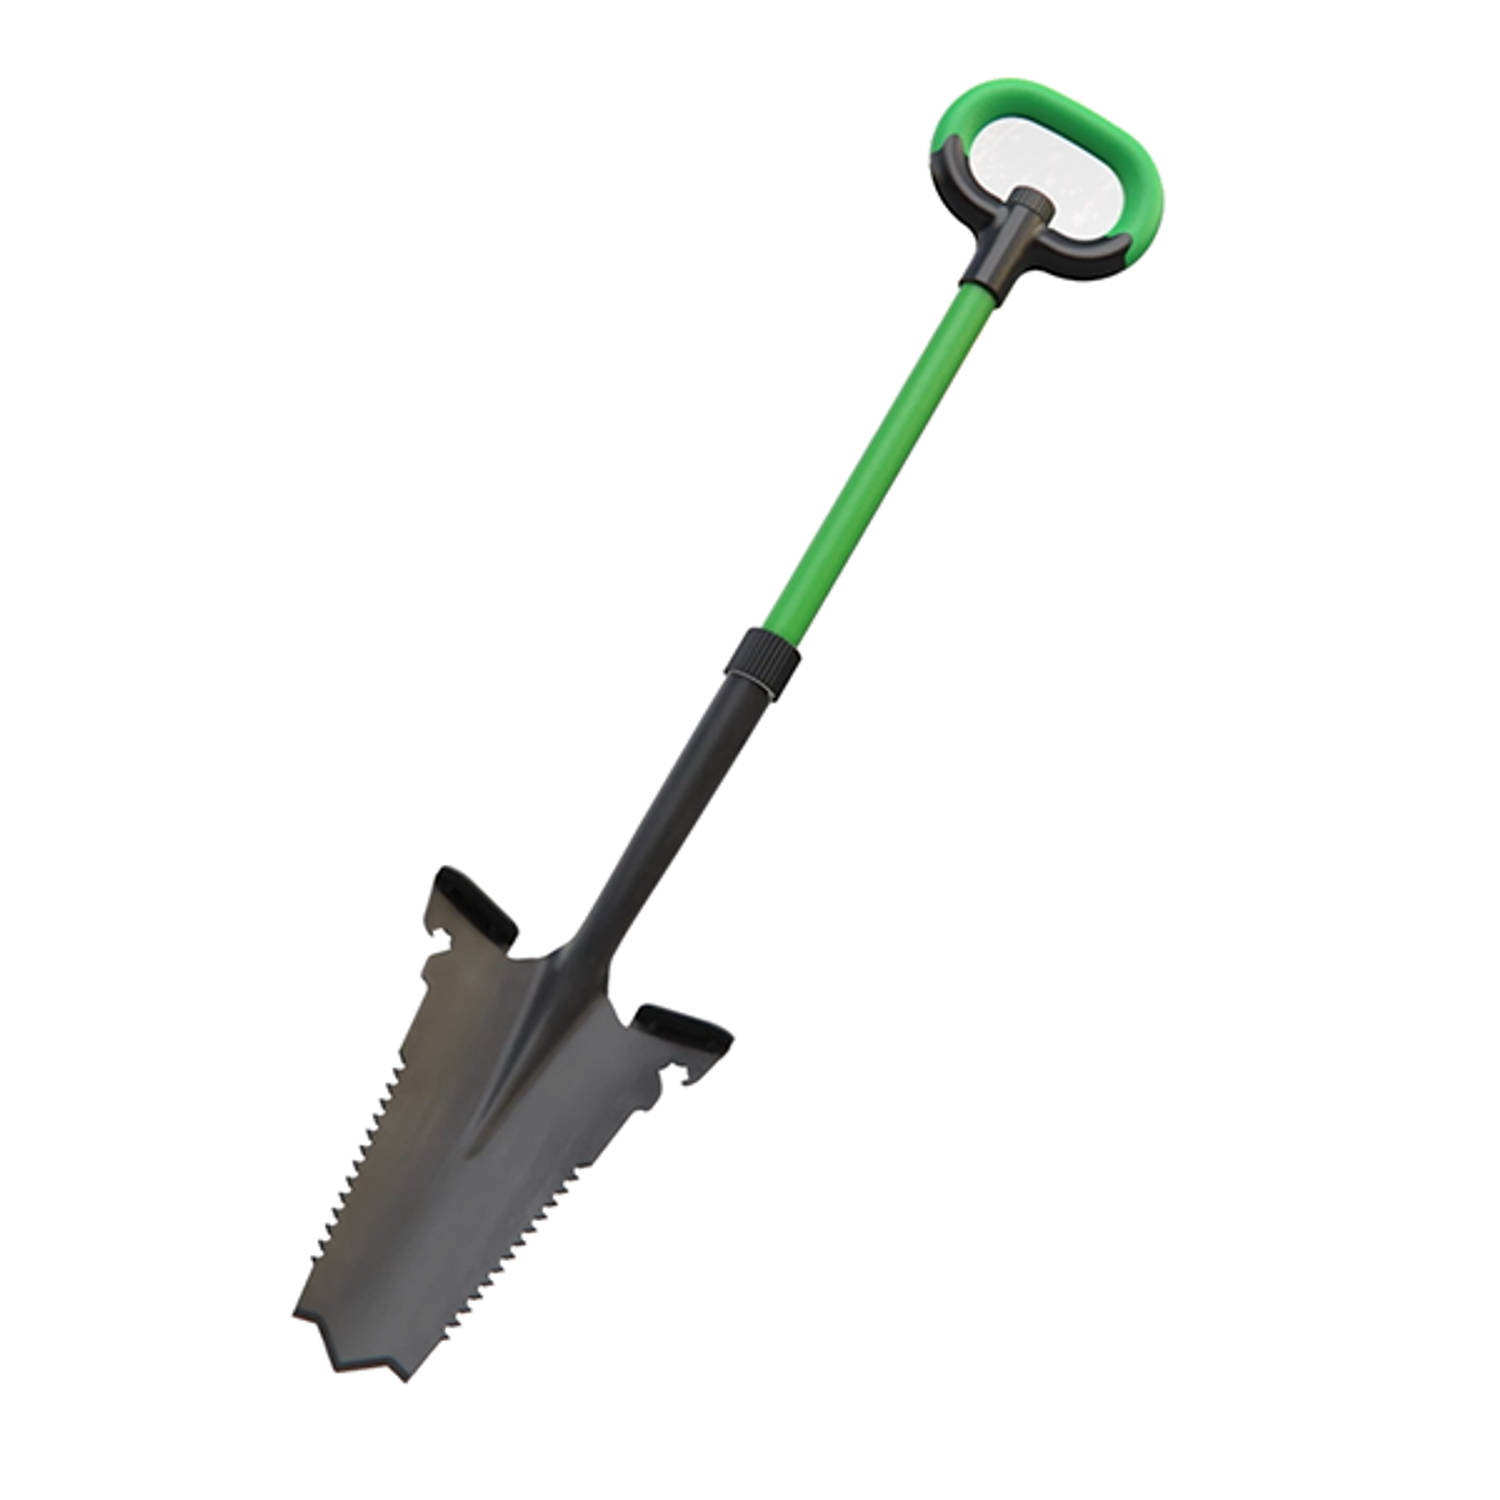 Hammersmith Rayzer Shovel Multifunctionele Tuinschep - Tuinschep voor harde, steenachtige grond - Speciale spade met geïntegreerde wortelzaag en soft-touch handgreep - Extra brede